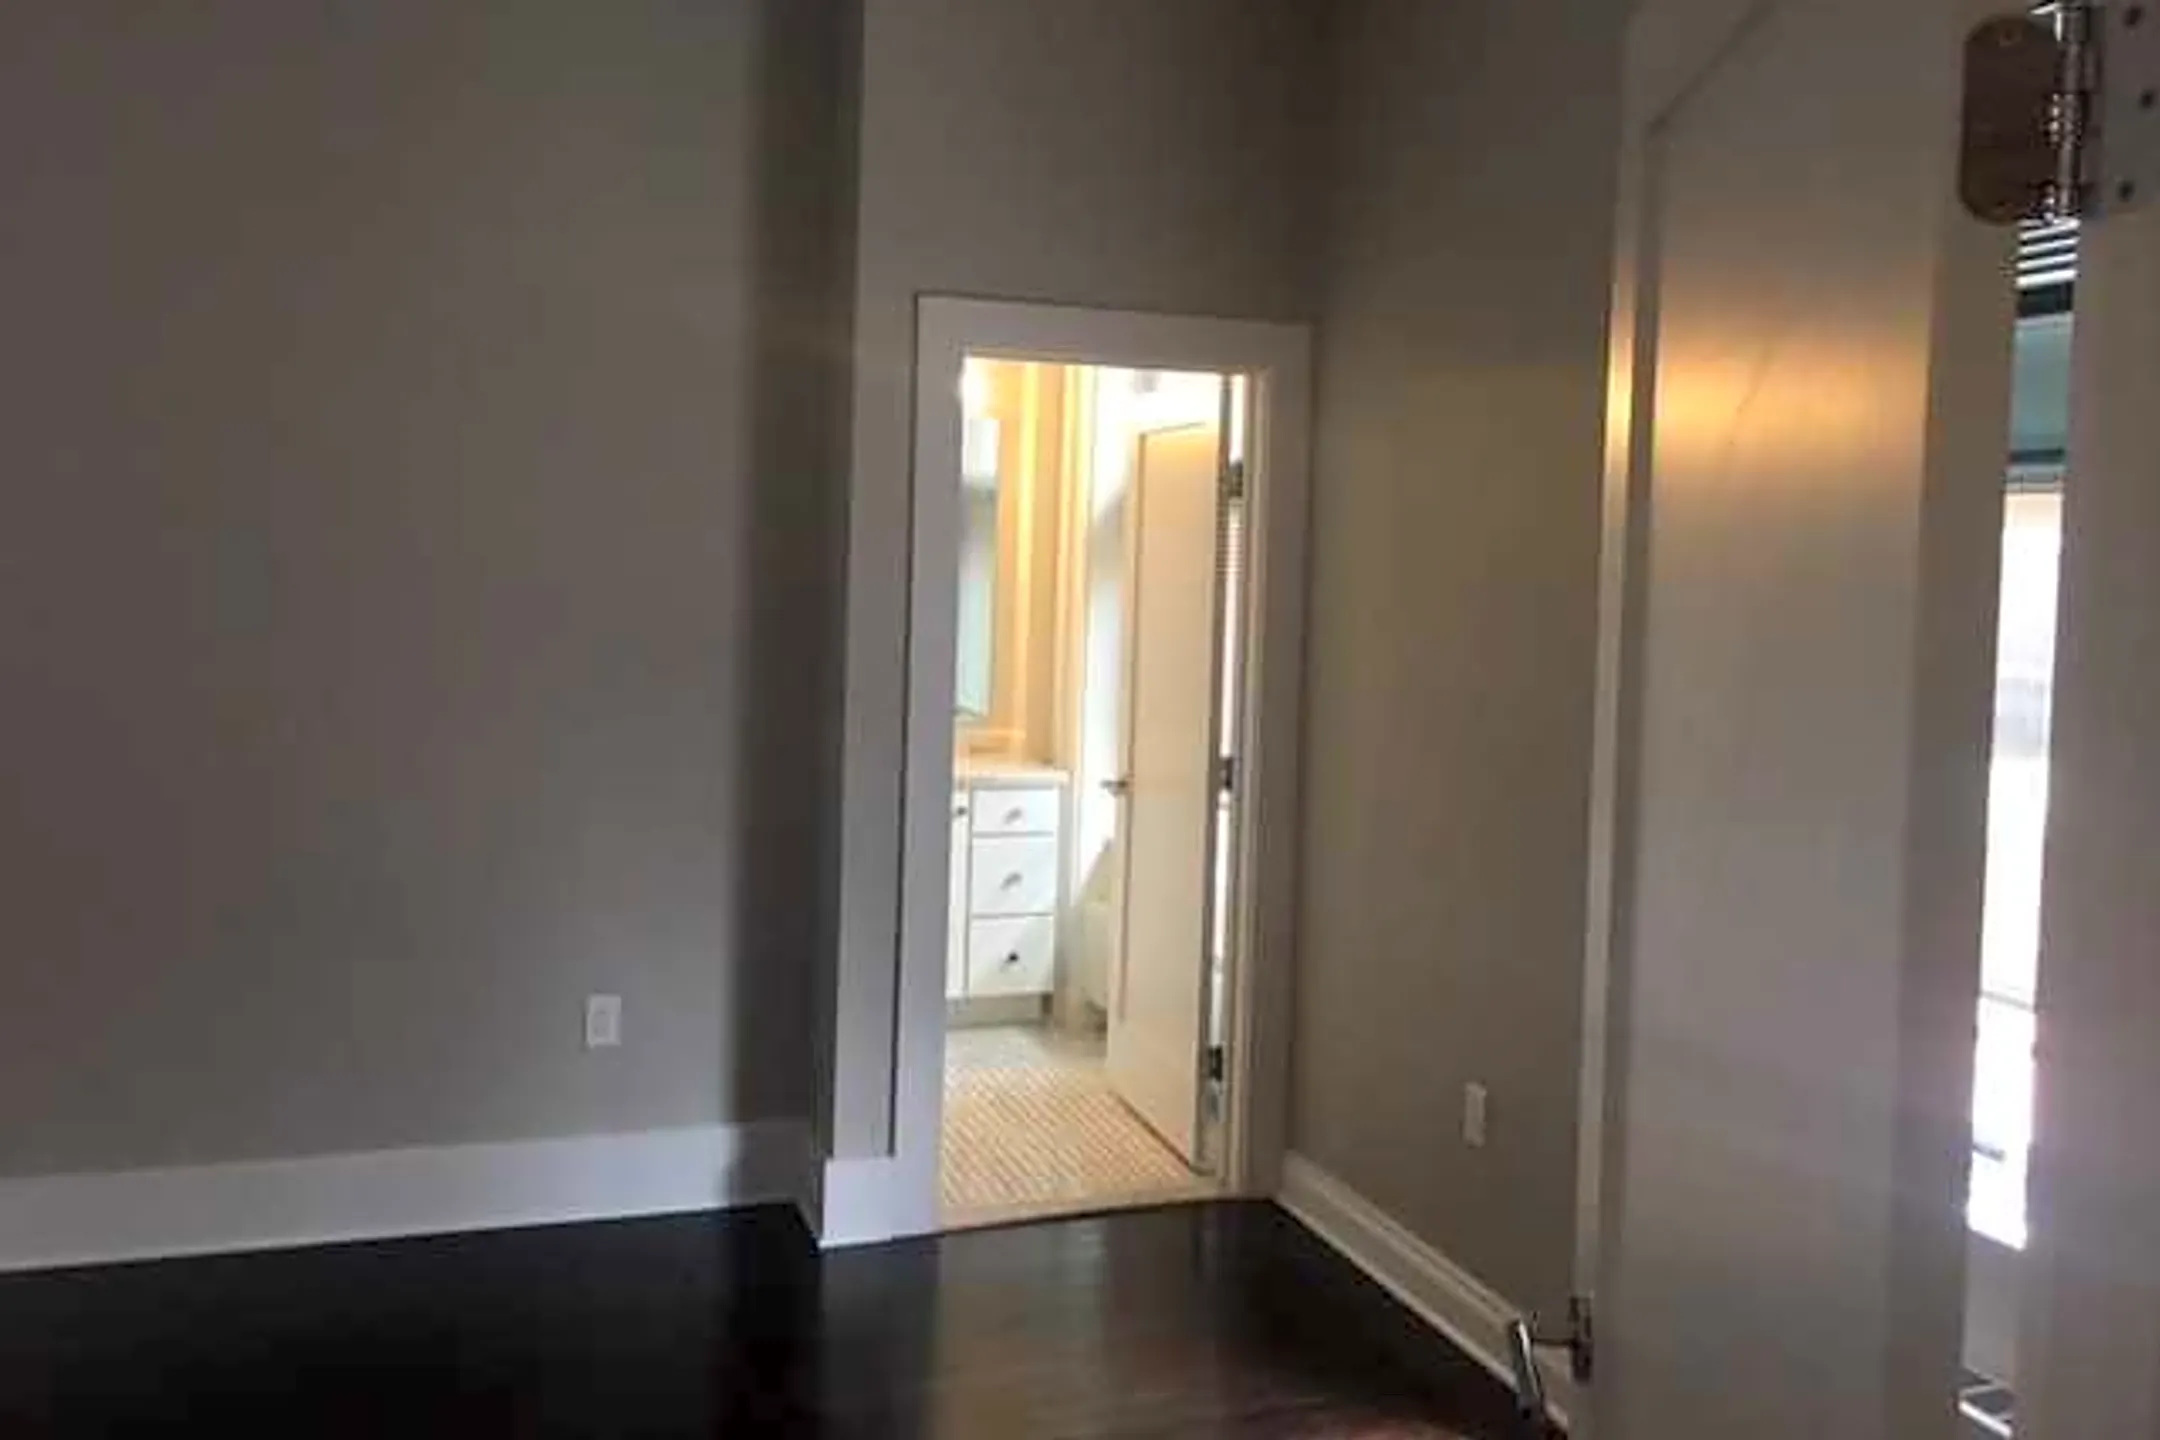 Bedroom - Pike Block Apartments - Syracuse, NY